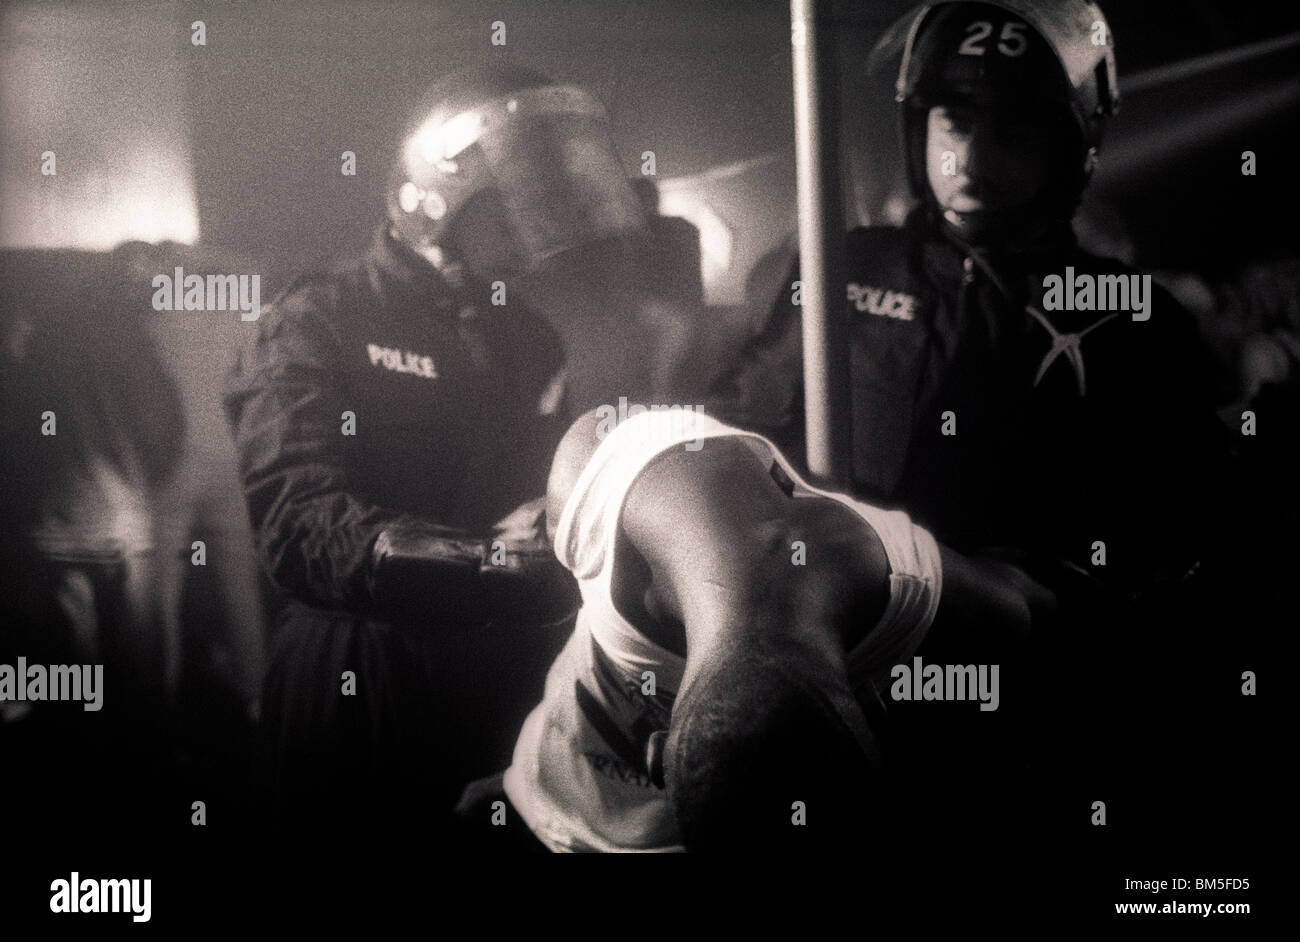 Polizei-Razzia durch die Metropolitan Police TSG Offiziere in South London, England, UK. Ende der 1980er Jahre. Polizeirazzia gegen Drogendealer bei einem s Stockfoto